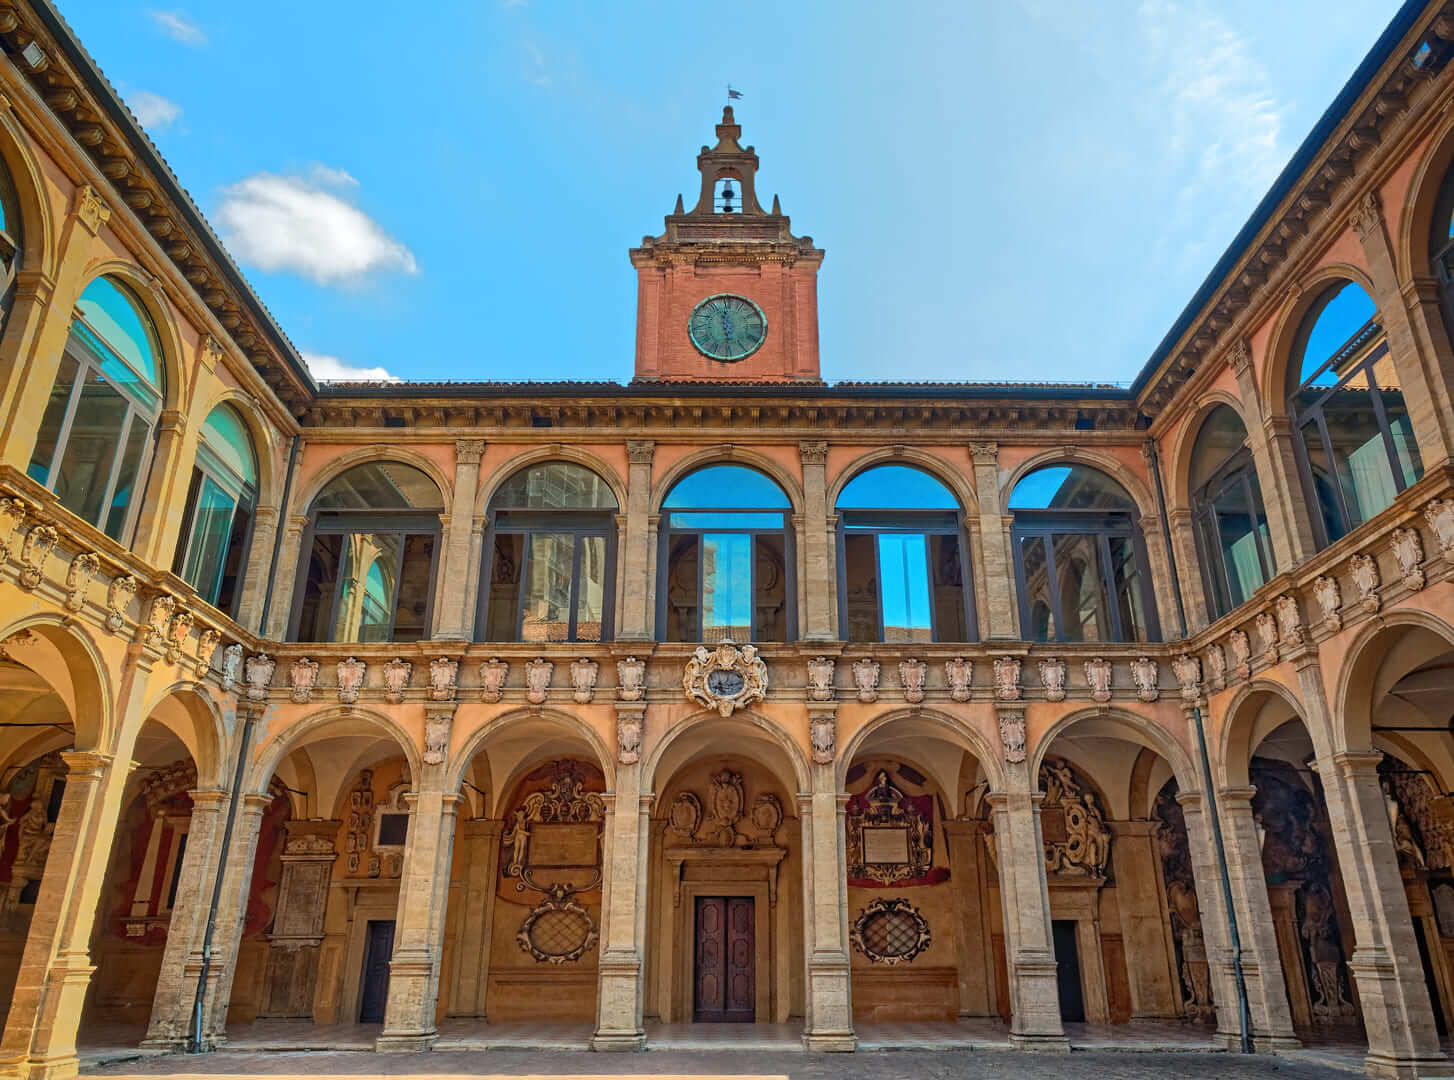 The Archiginnasio of Bologna exterior view